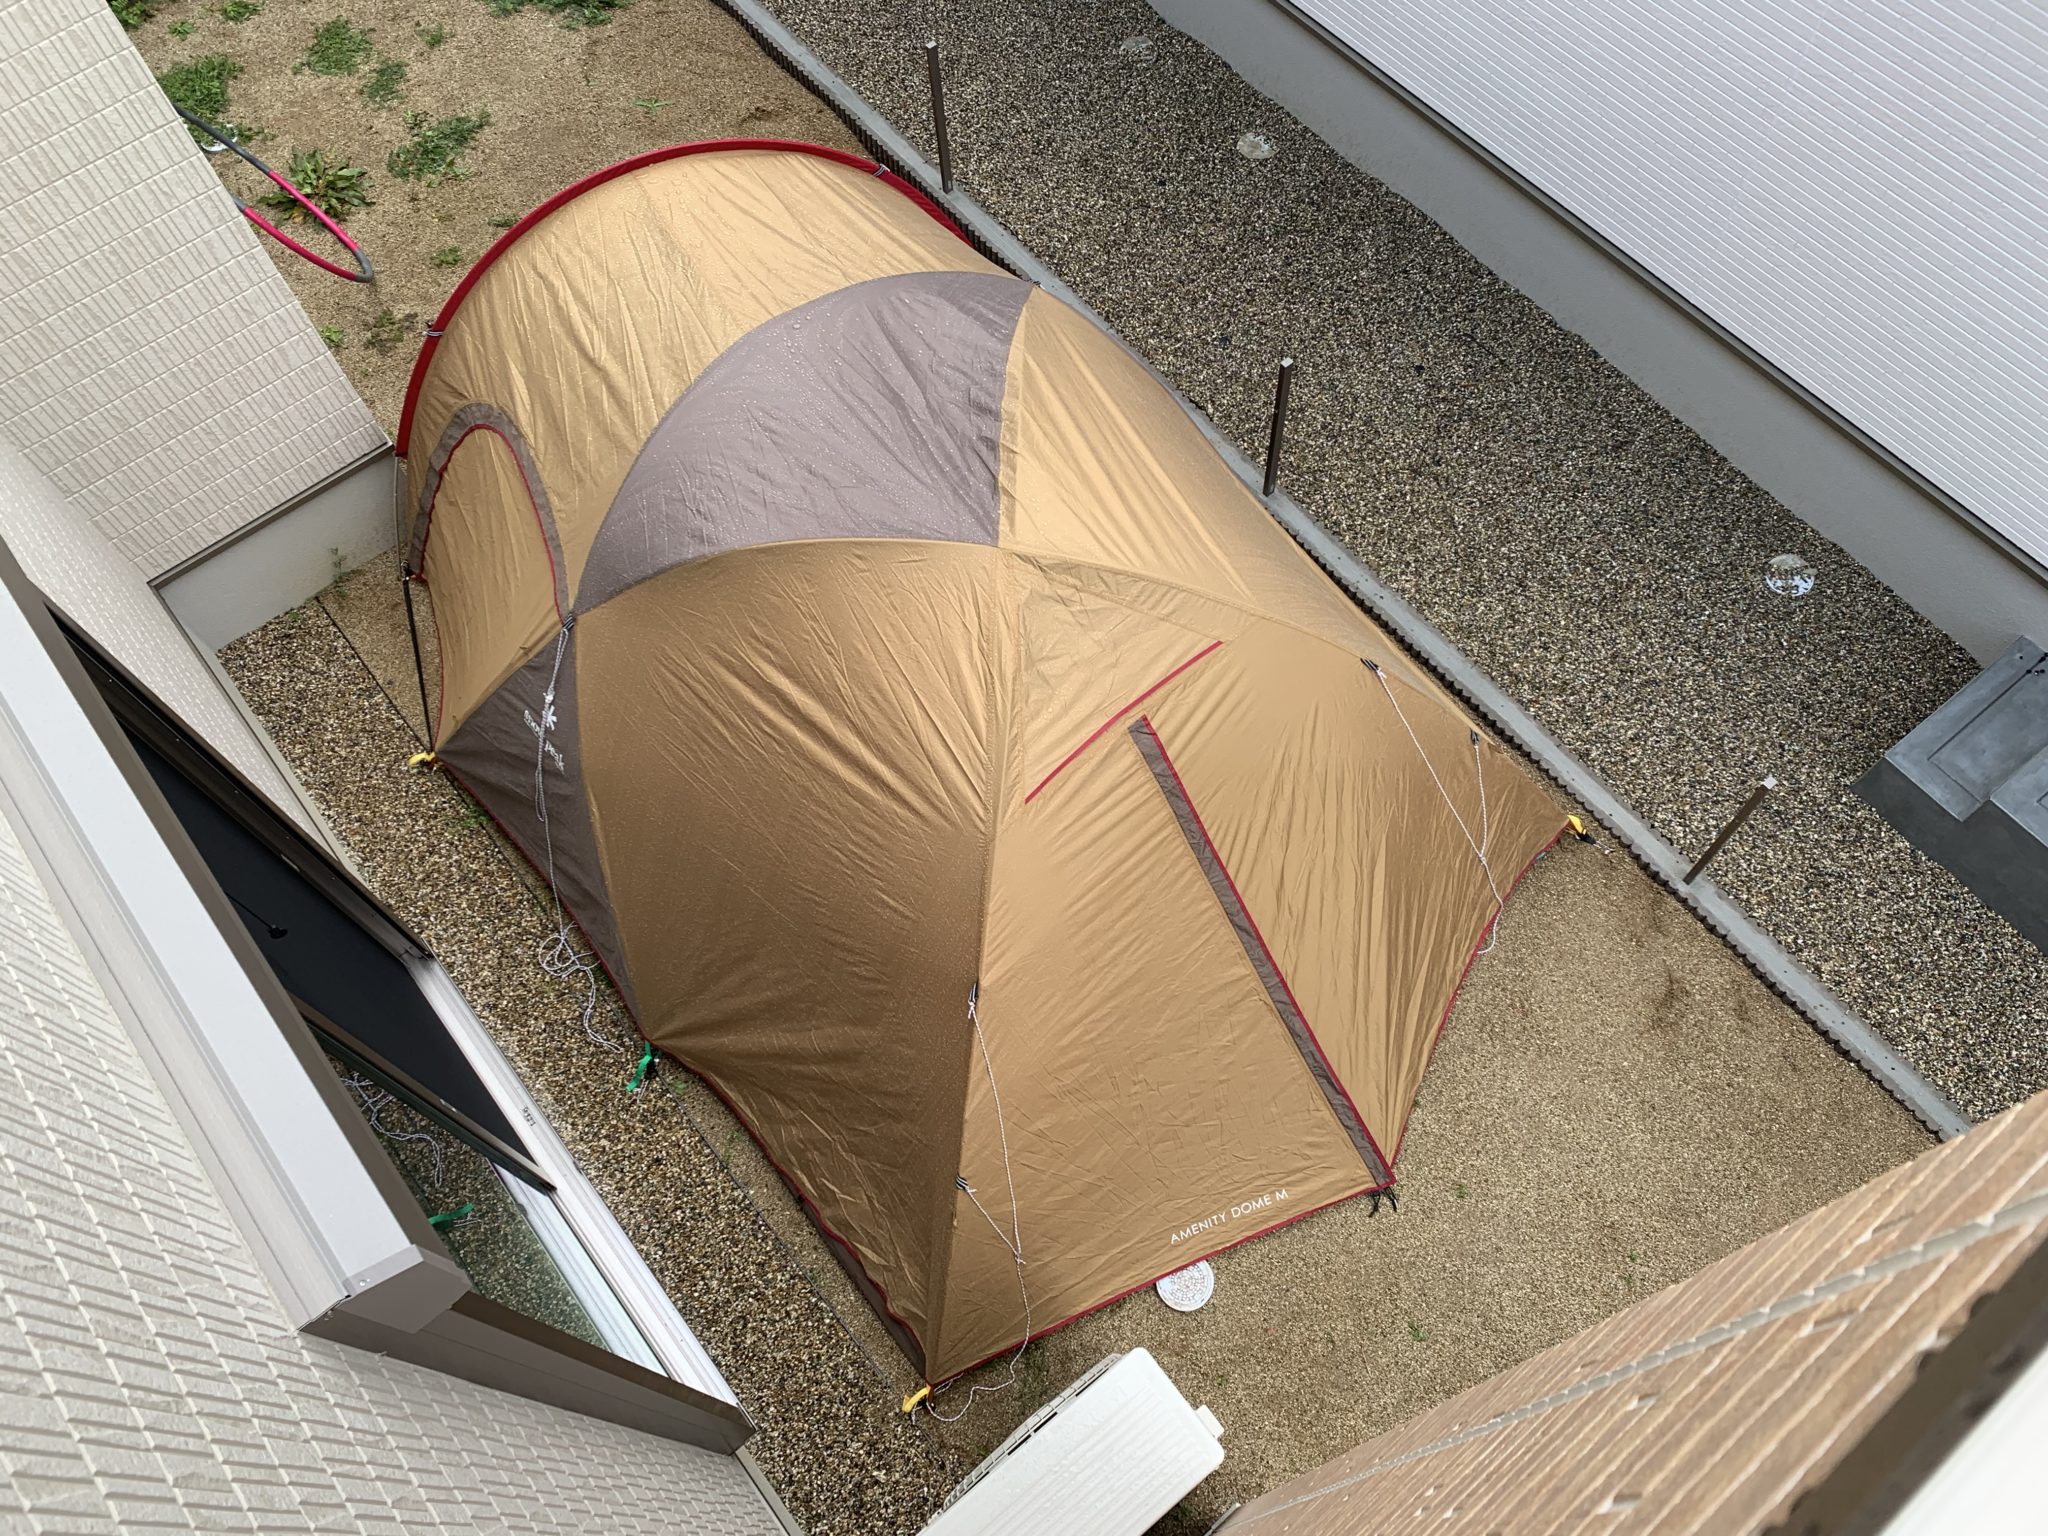 【庭キャンプ】#いまはおうちでキャンプしよう テントを張ればアウトドア | 「大阪発」男前キャンプ研究ブログ